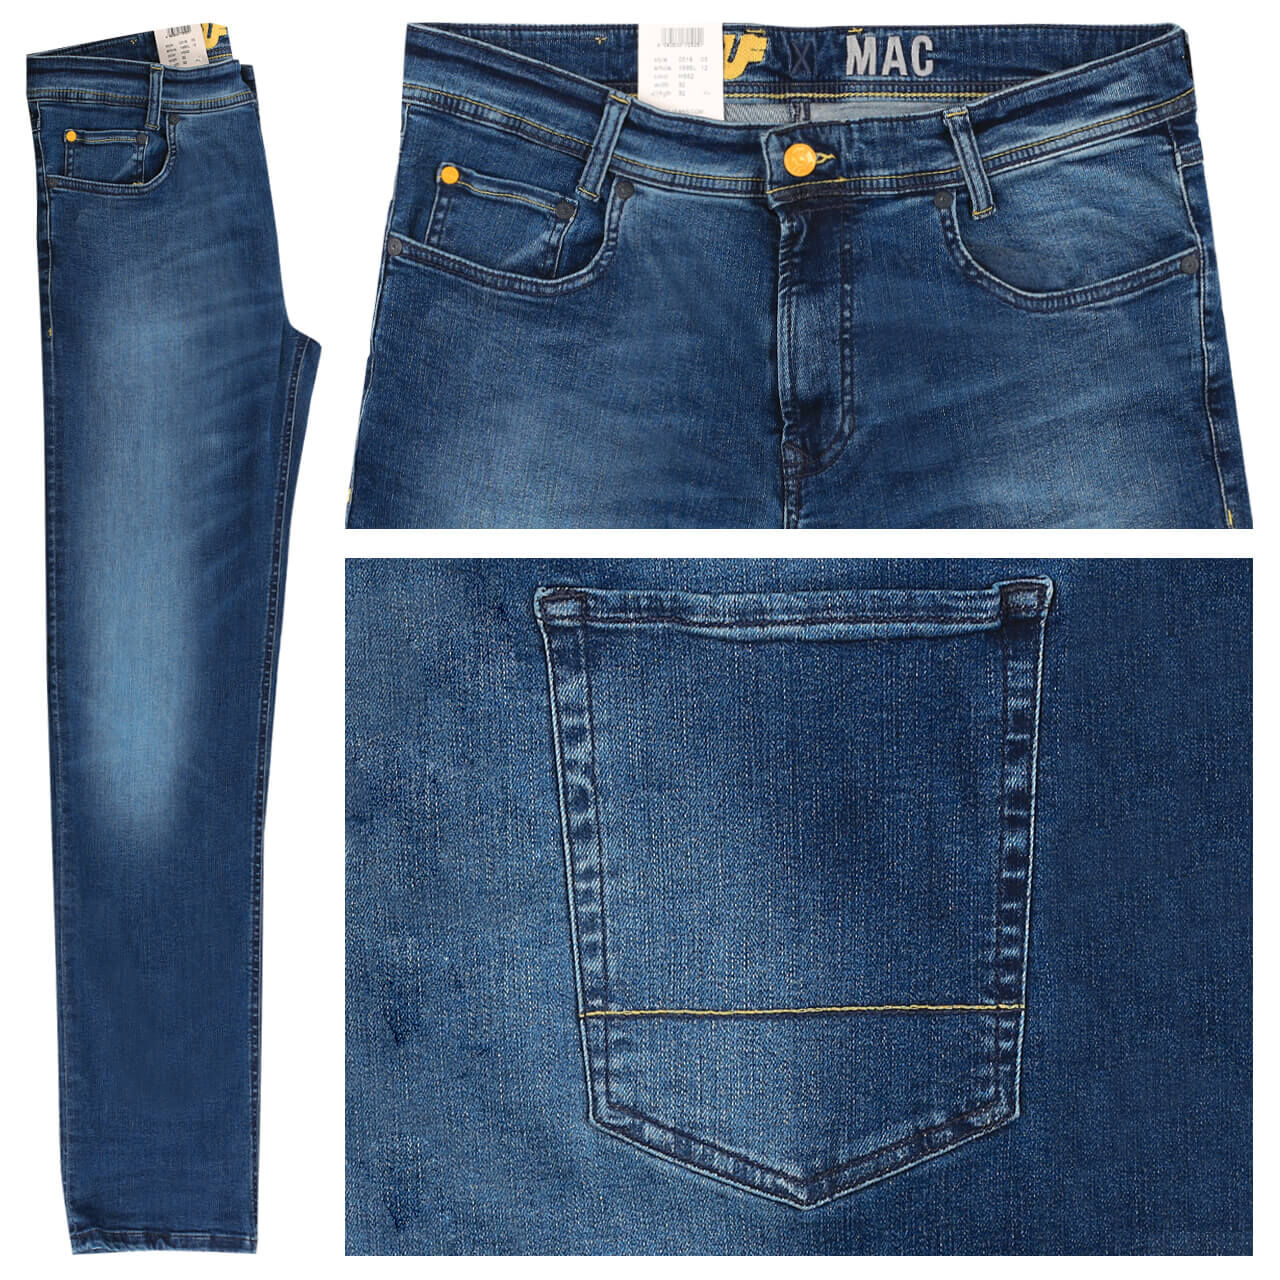 MAC Jeans Flexx für Herren in Mittelblau angewaschen, FarbNr.: H552